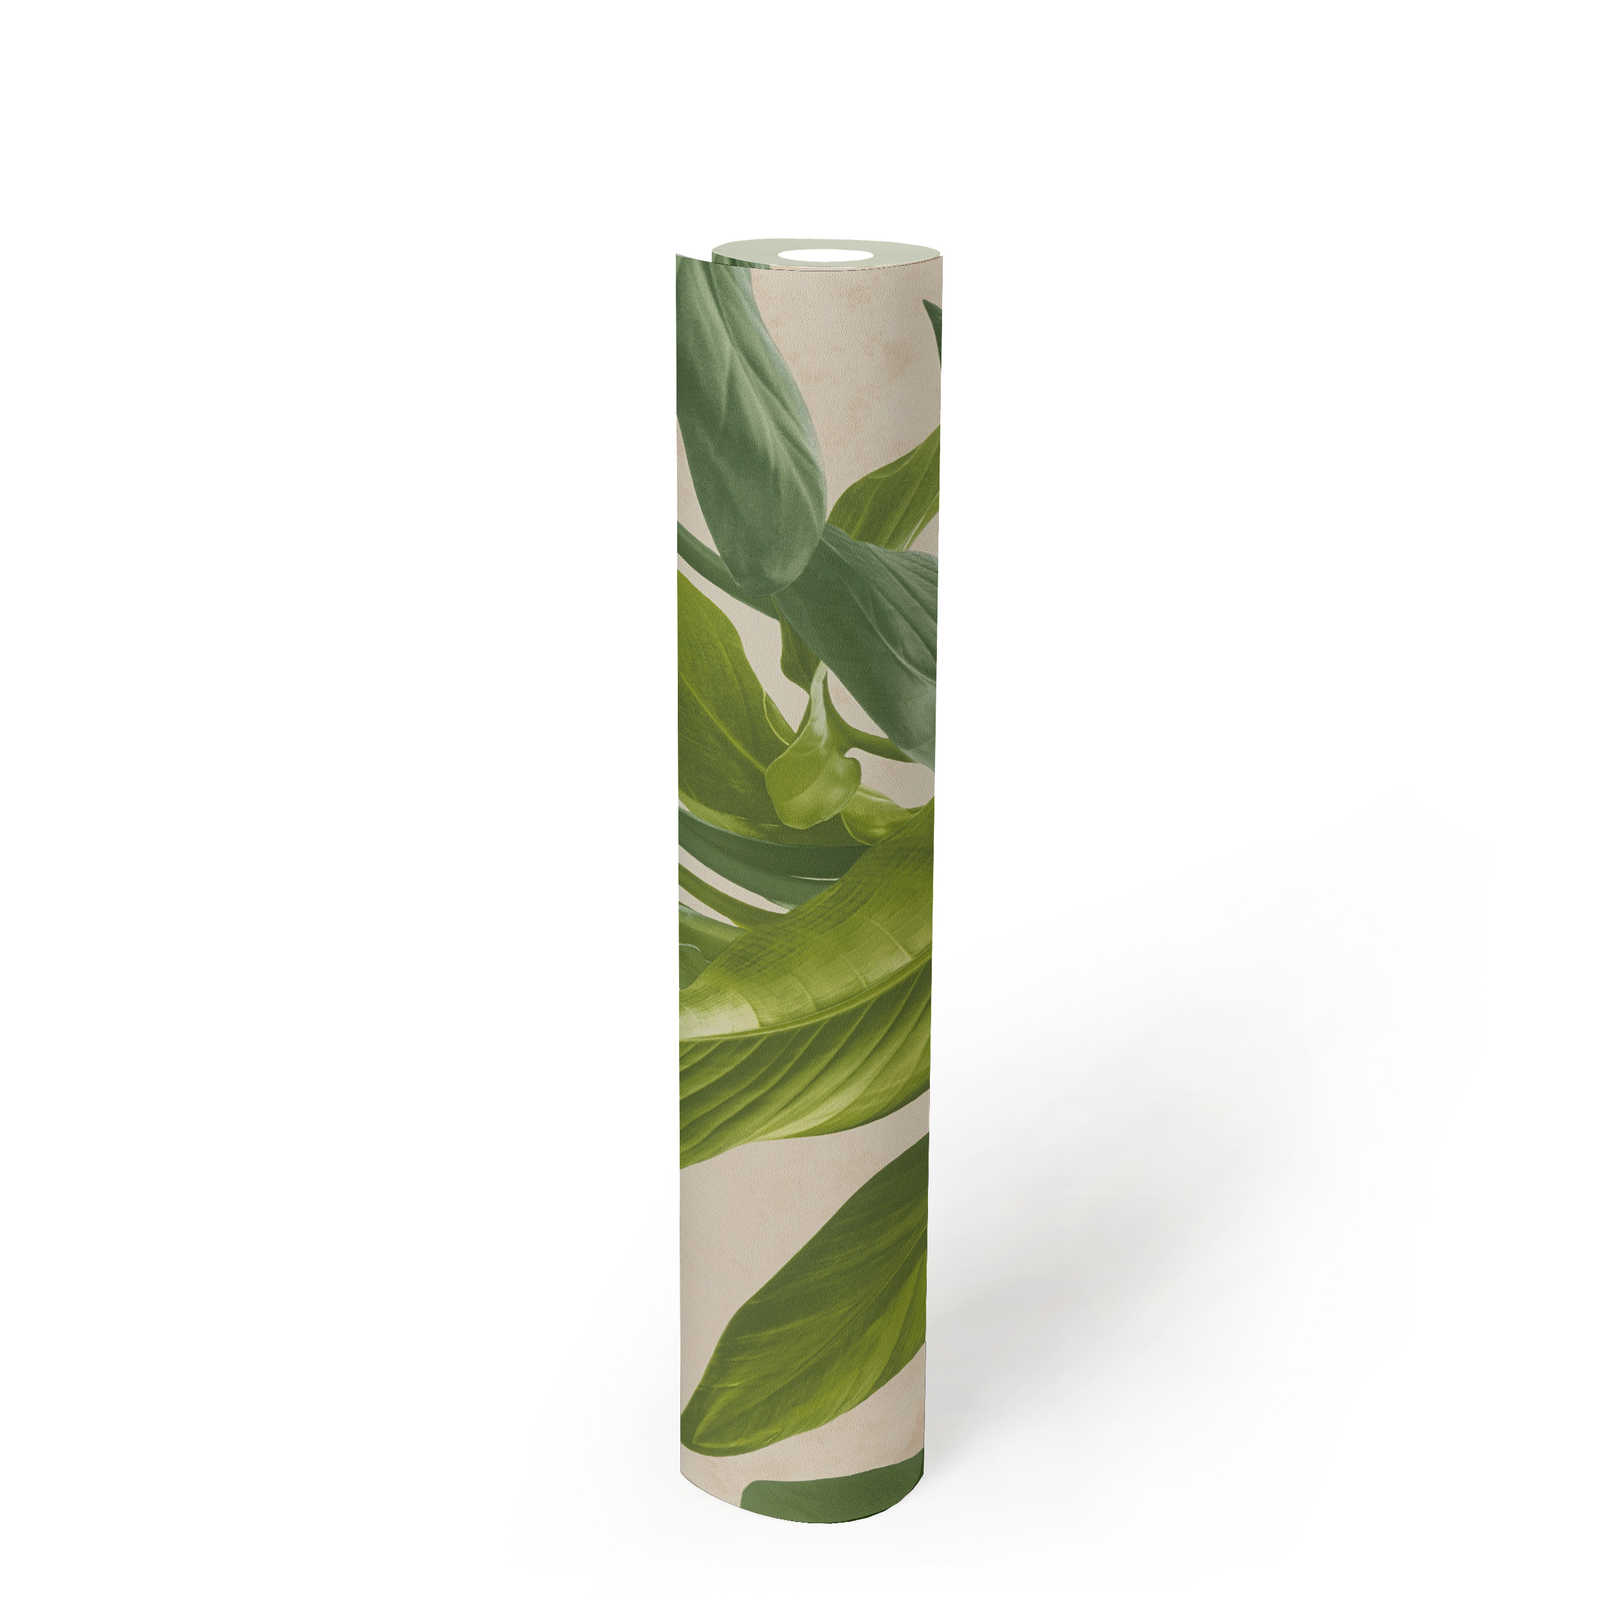             Carta da parati in tessuto non tessuto con moderno disegno di foglie - crema, verde
        